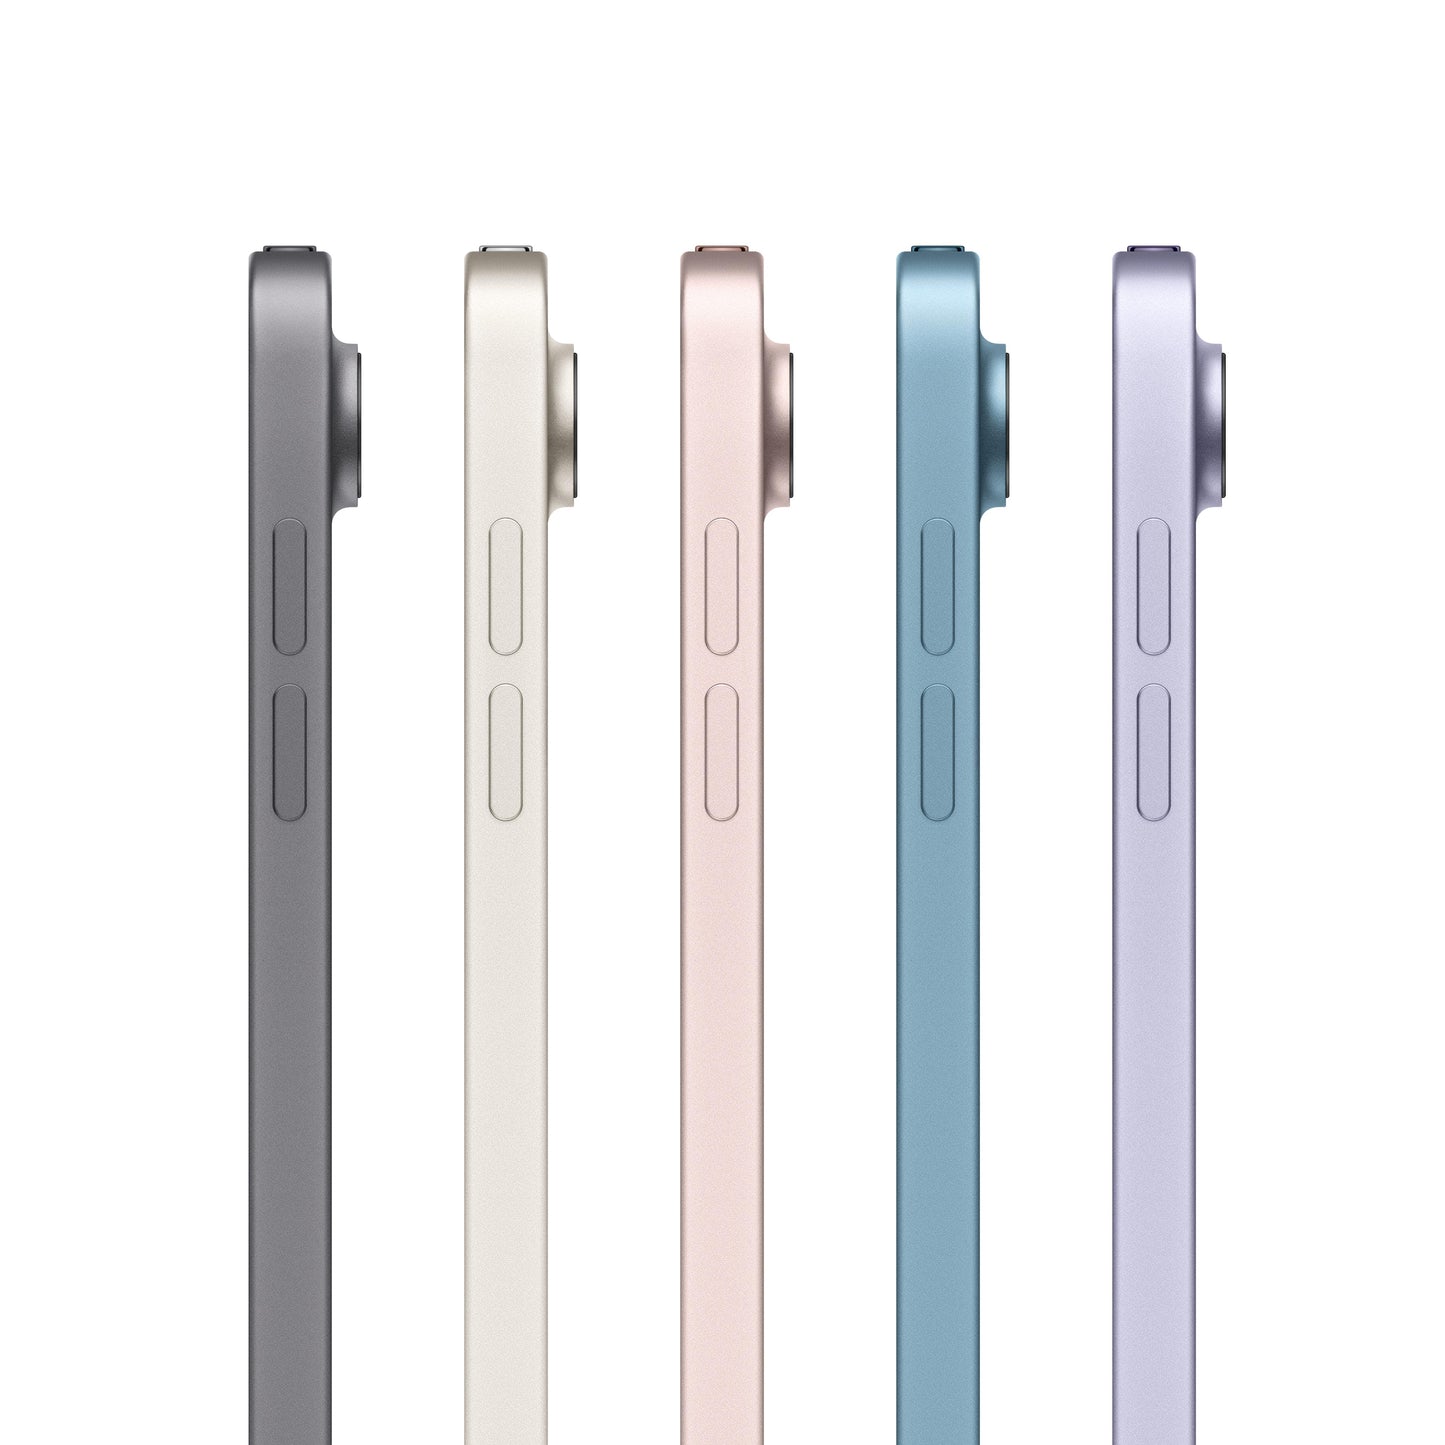 2022 iPad Air Wi-Fi 256 GB - Blanco estrella (5.ª generación) - Rossellimac